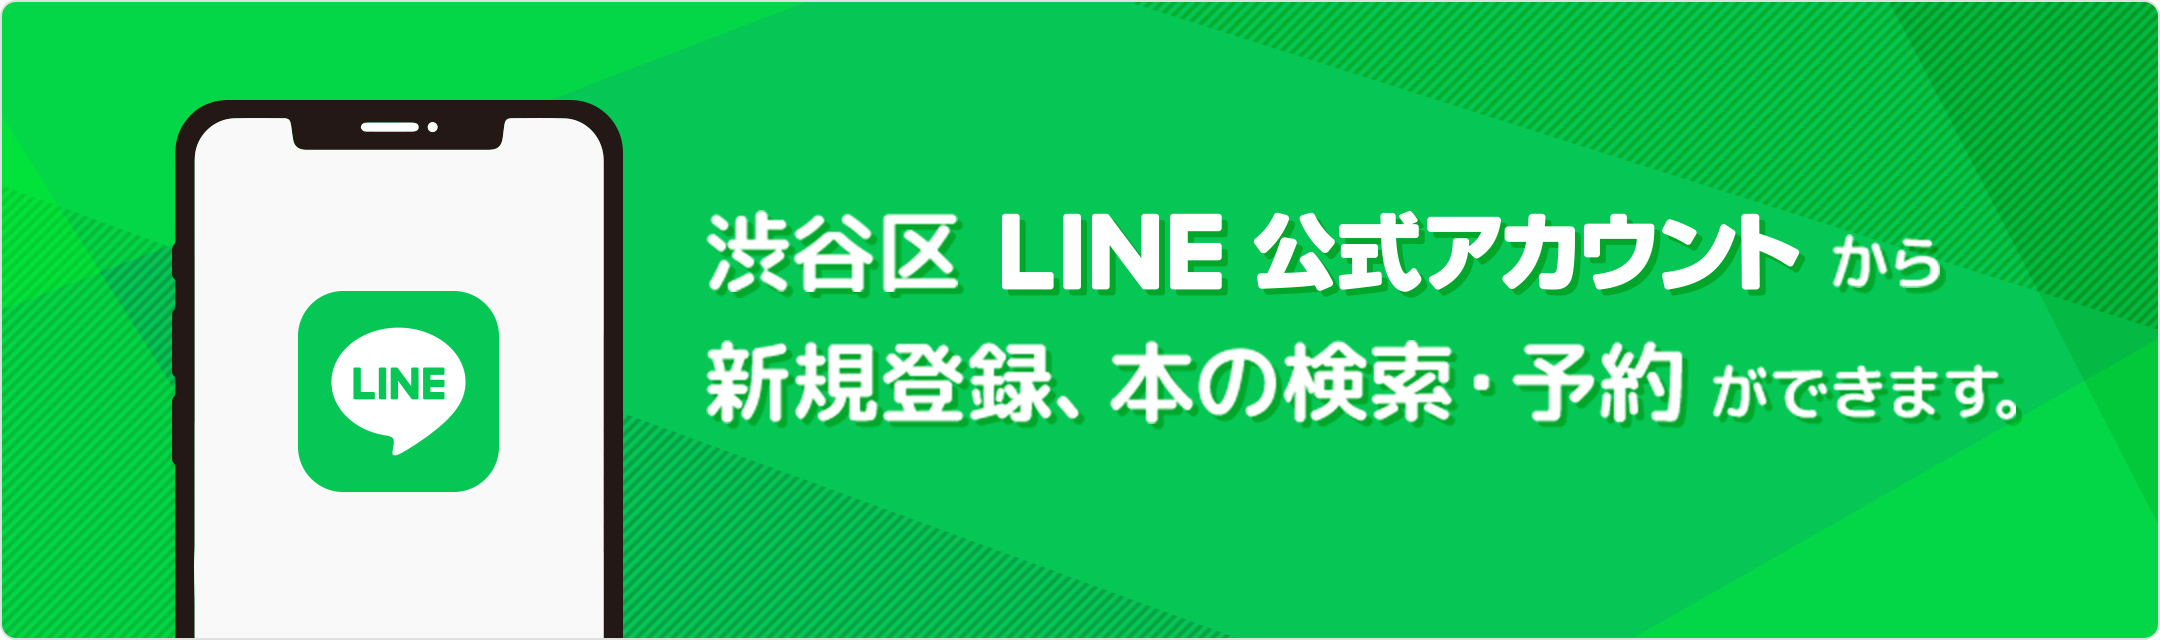 渋谷区LINE公式アカウント